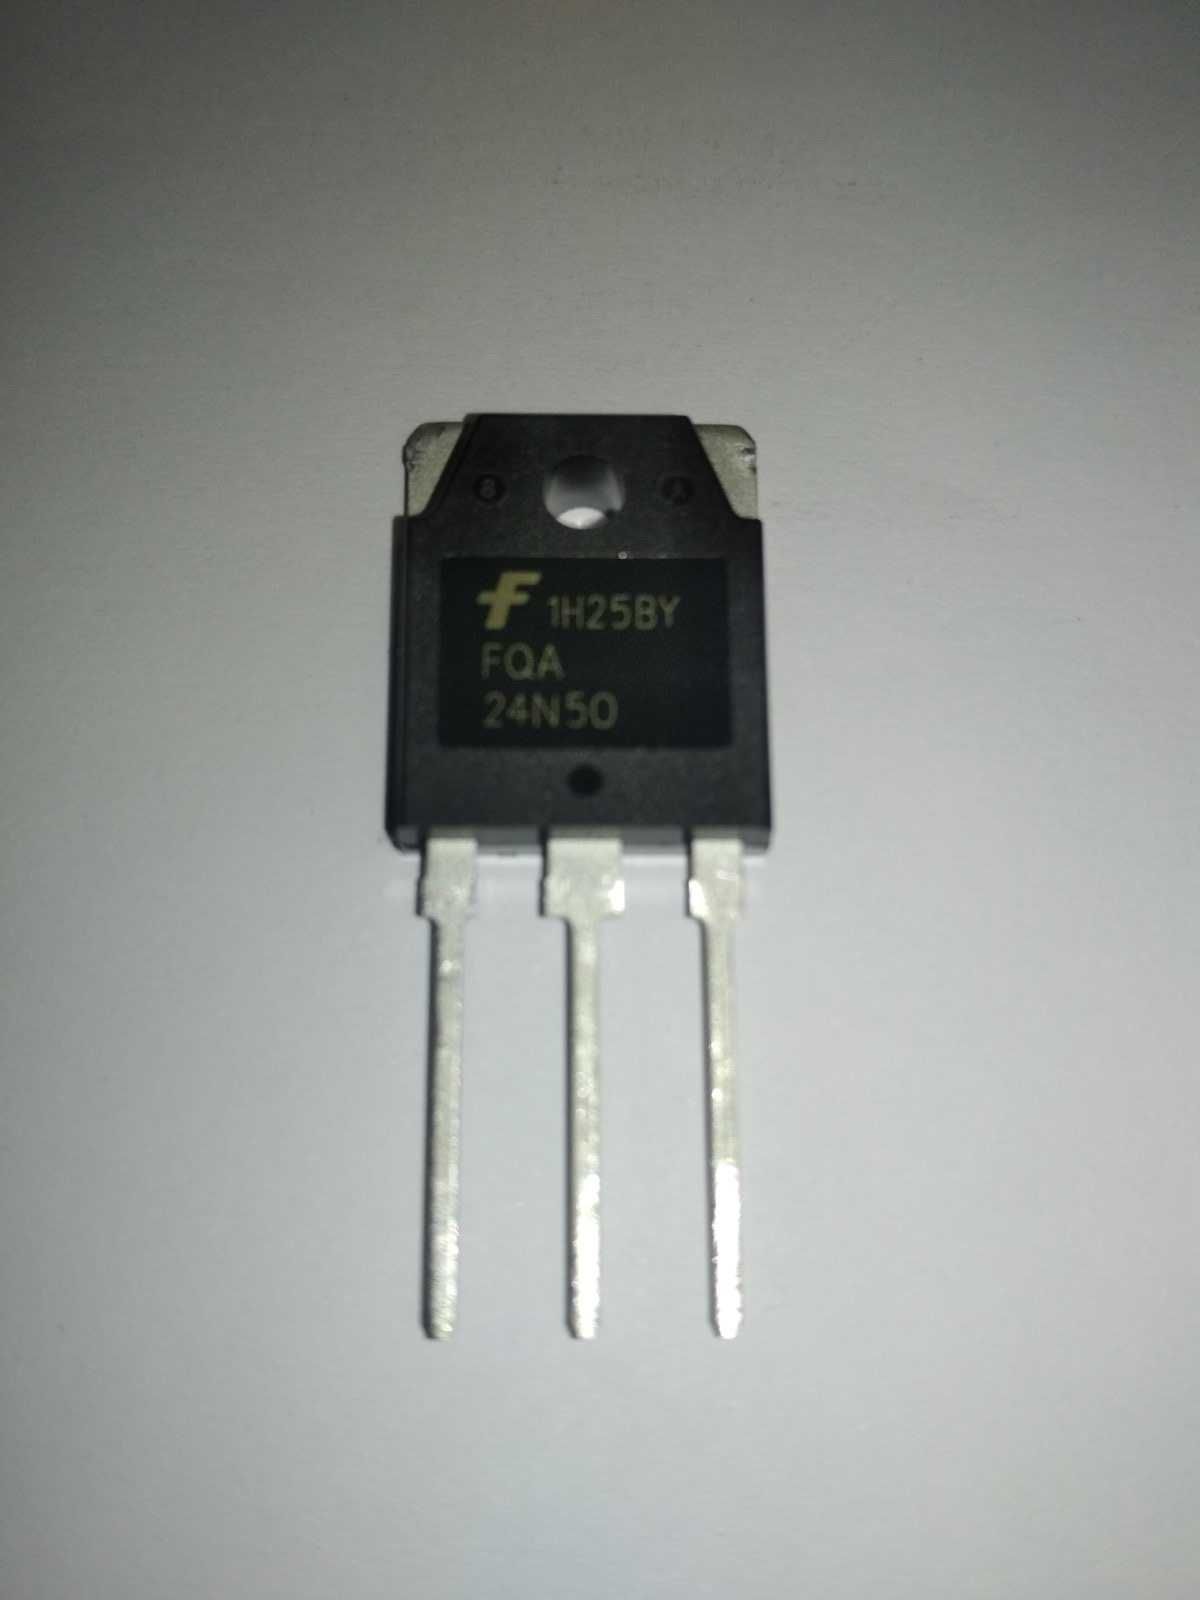 Транзистор FQA 24N50